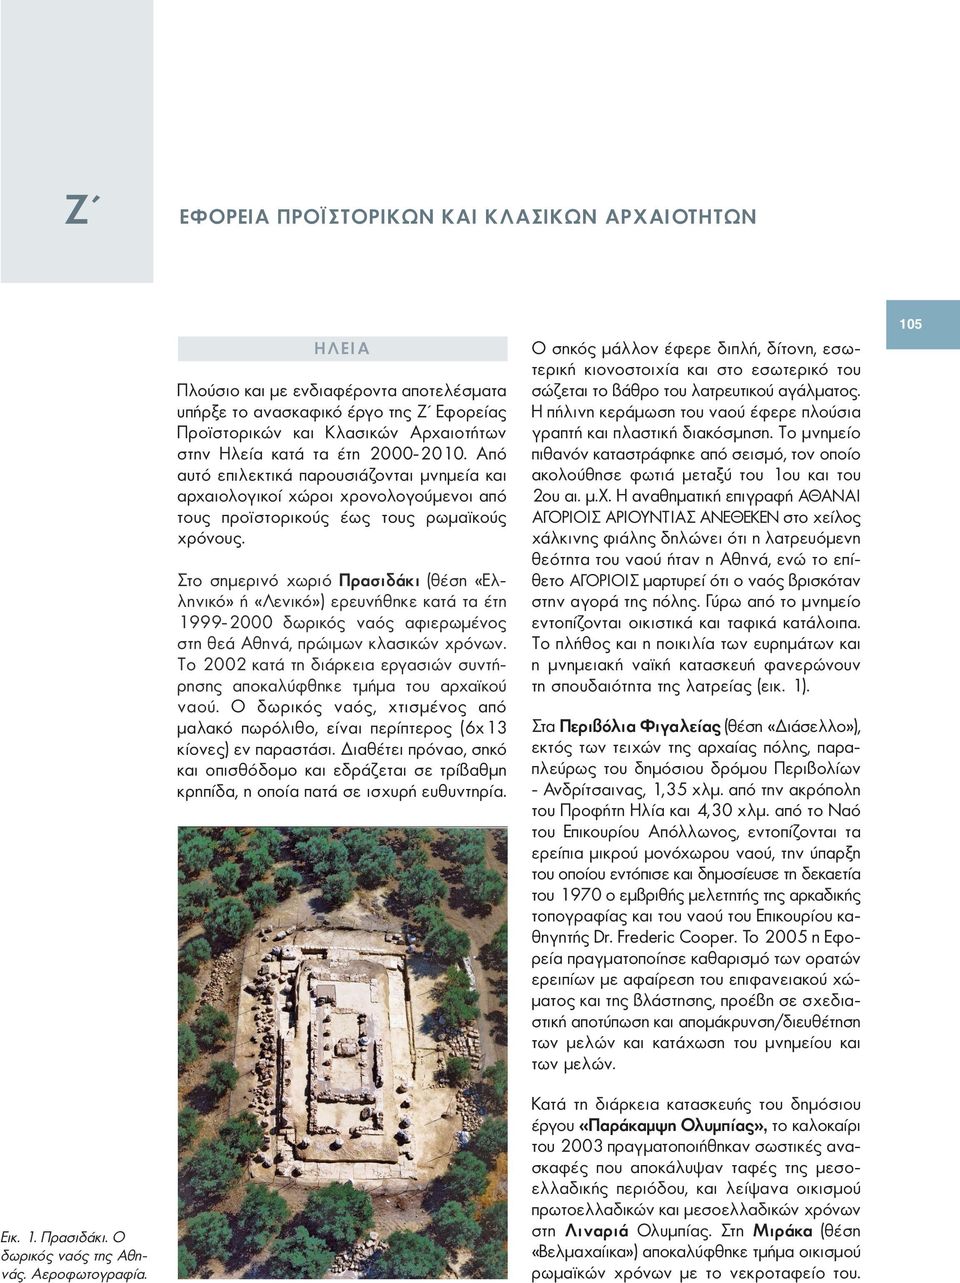 Στο σημερινό χωριό Πρασιδάκι (θέση «Ελληνικό» ή «Λενικό») ερευνήθηκε κατά τα έτη 1999-2000 δωρικός ναός αφιερωμένος στη θεά Αθηνά, πρώιμων κλασικών χρόνων.